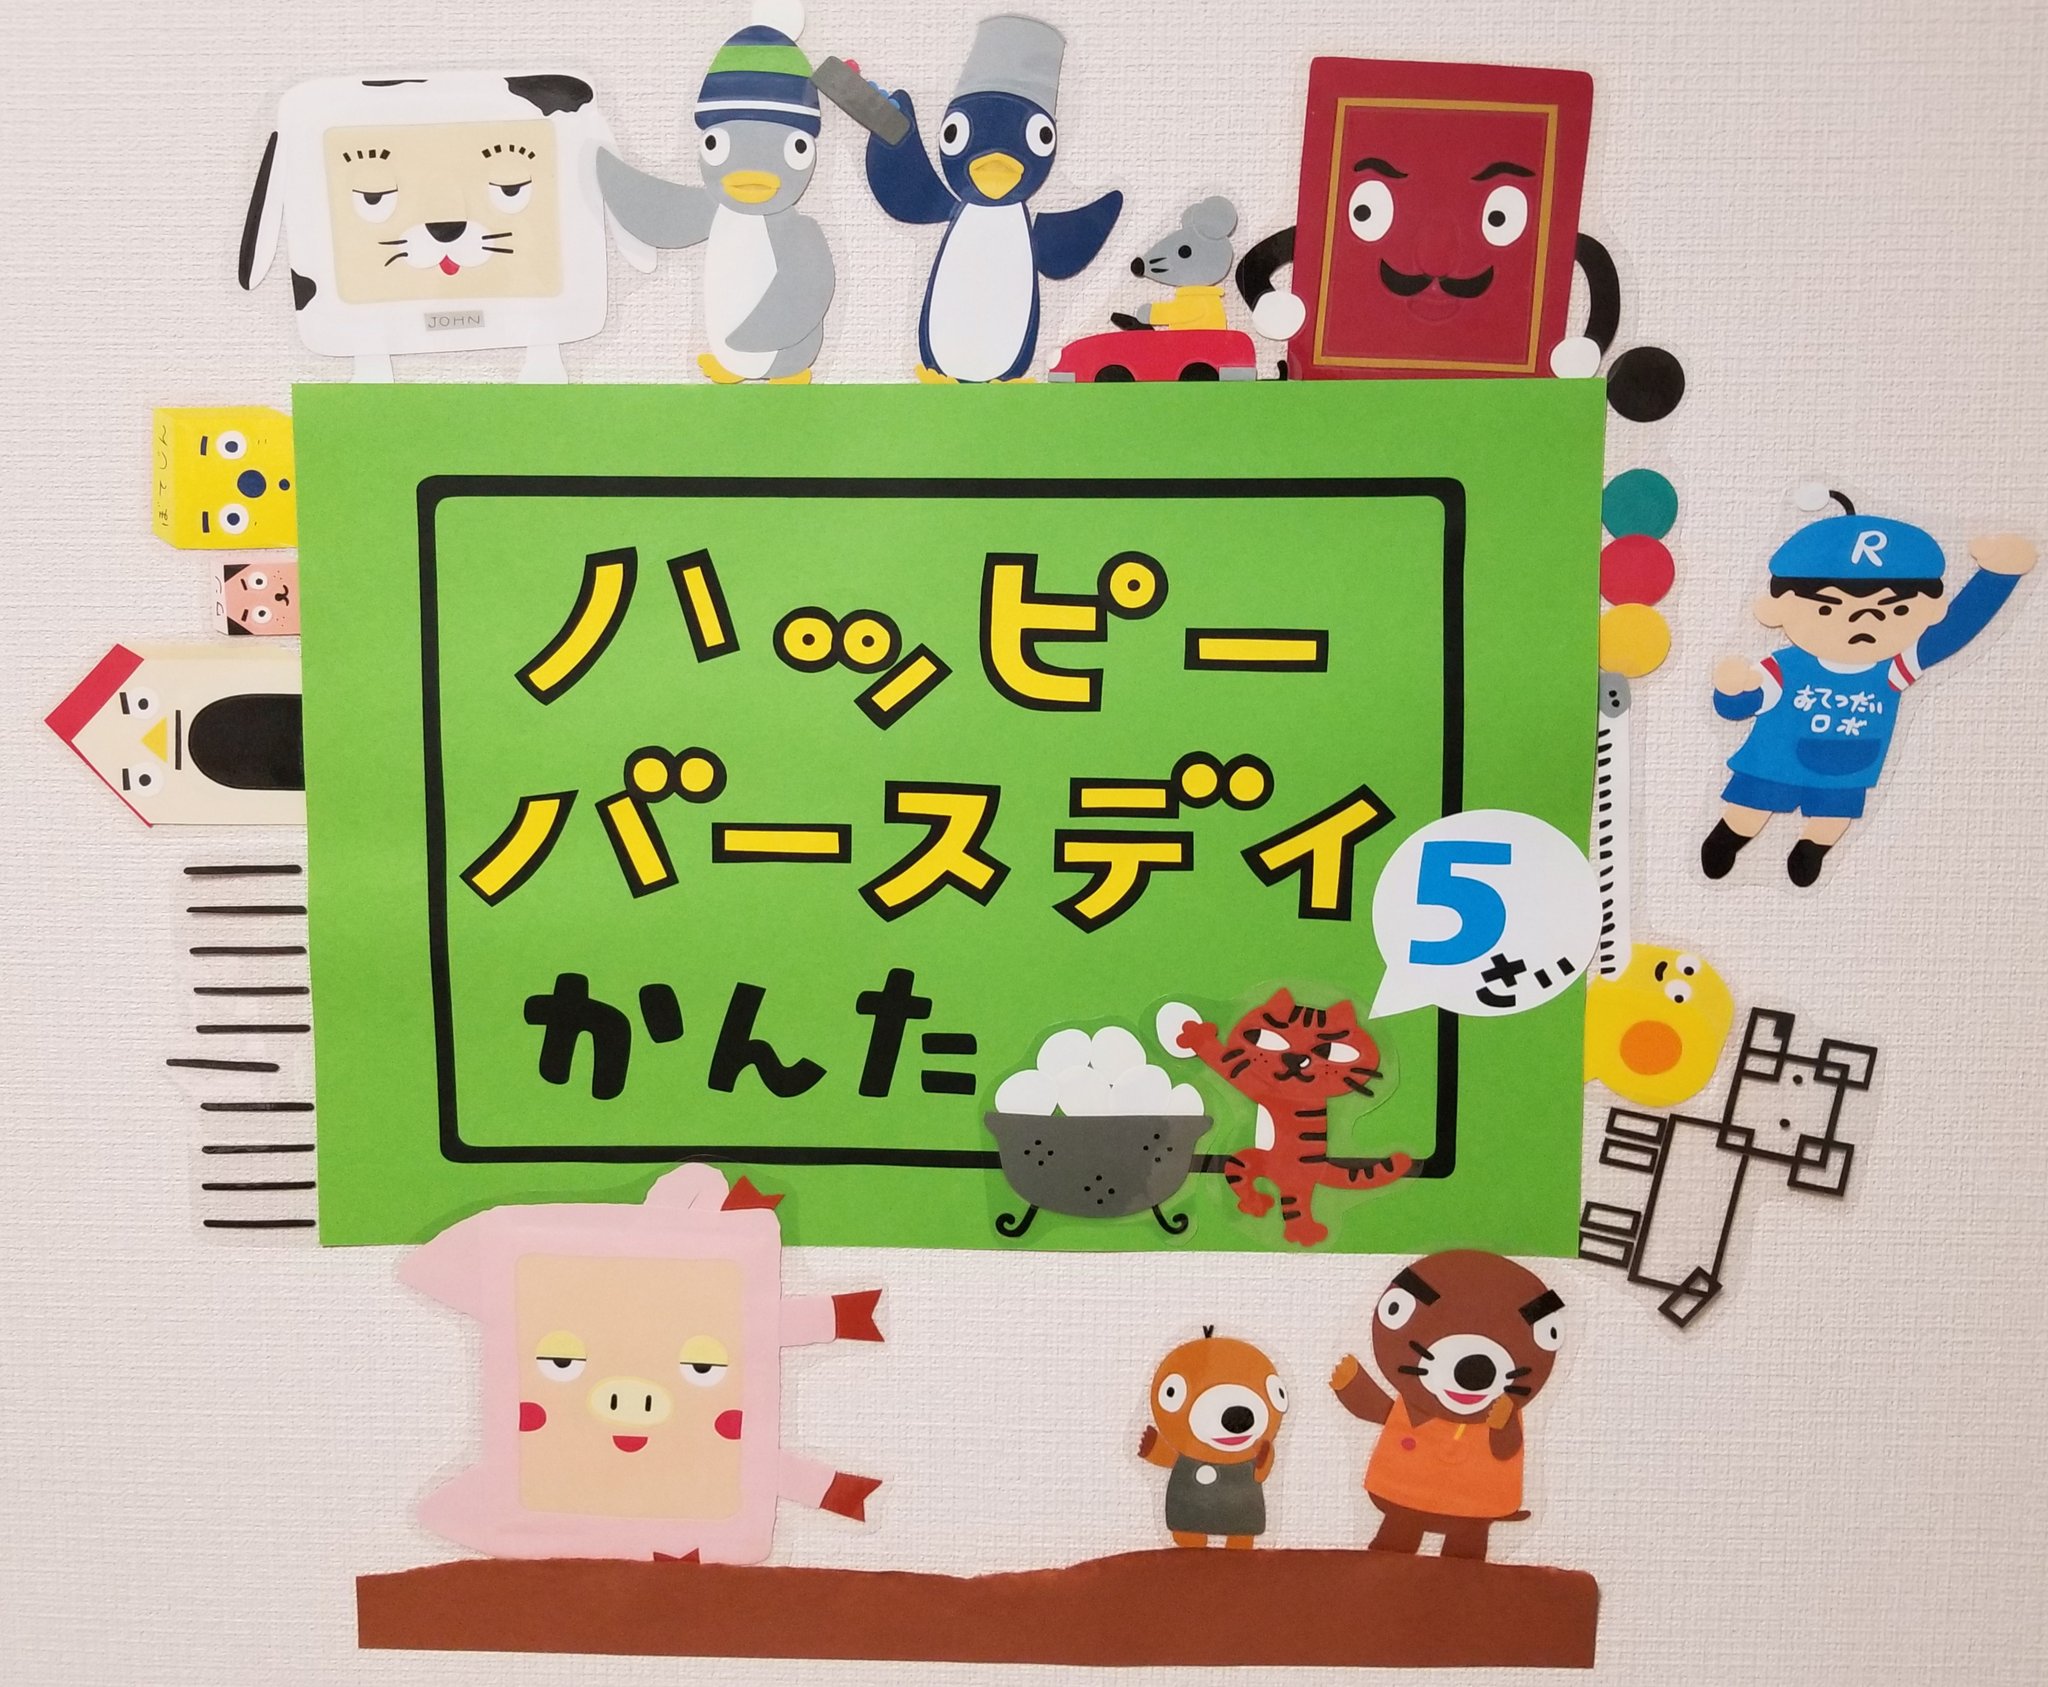 Tekkanamaki たまごーとる たま 10ぽんアニメも 表すのは同じすうじ ピタゴラスイッチ 壁紙 画用紙 T Co Yhslvaccfe Twitter